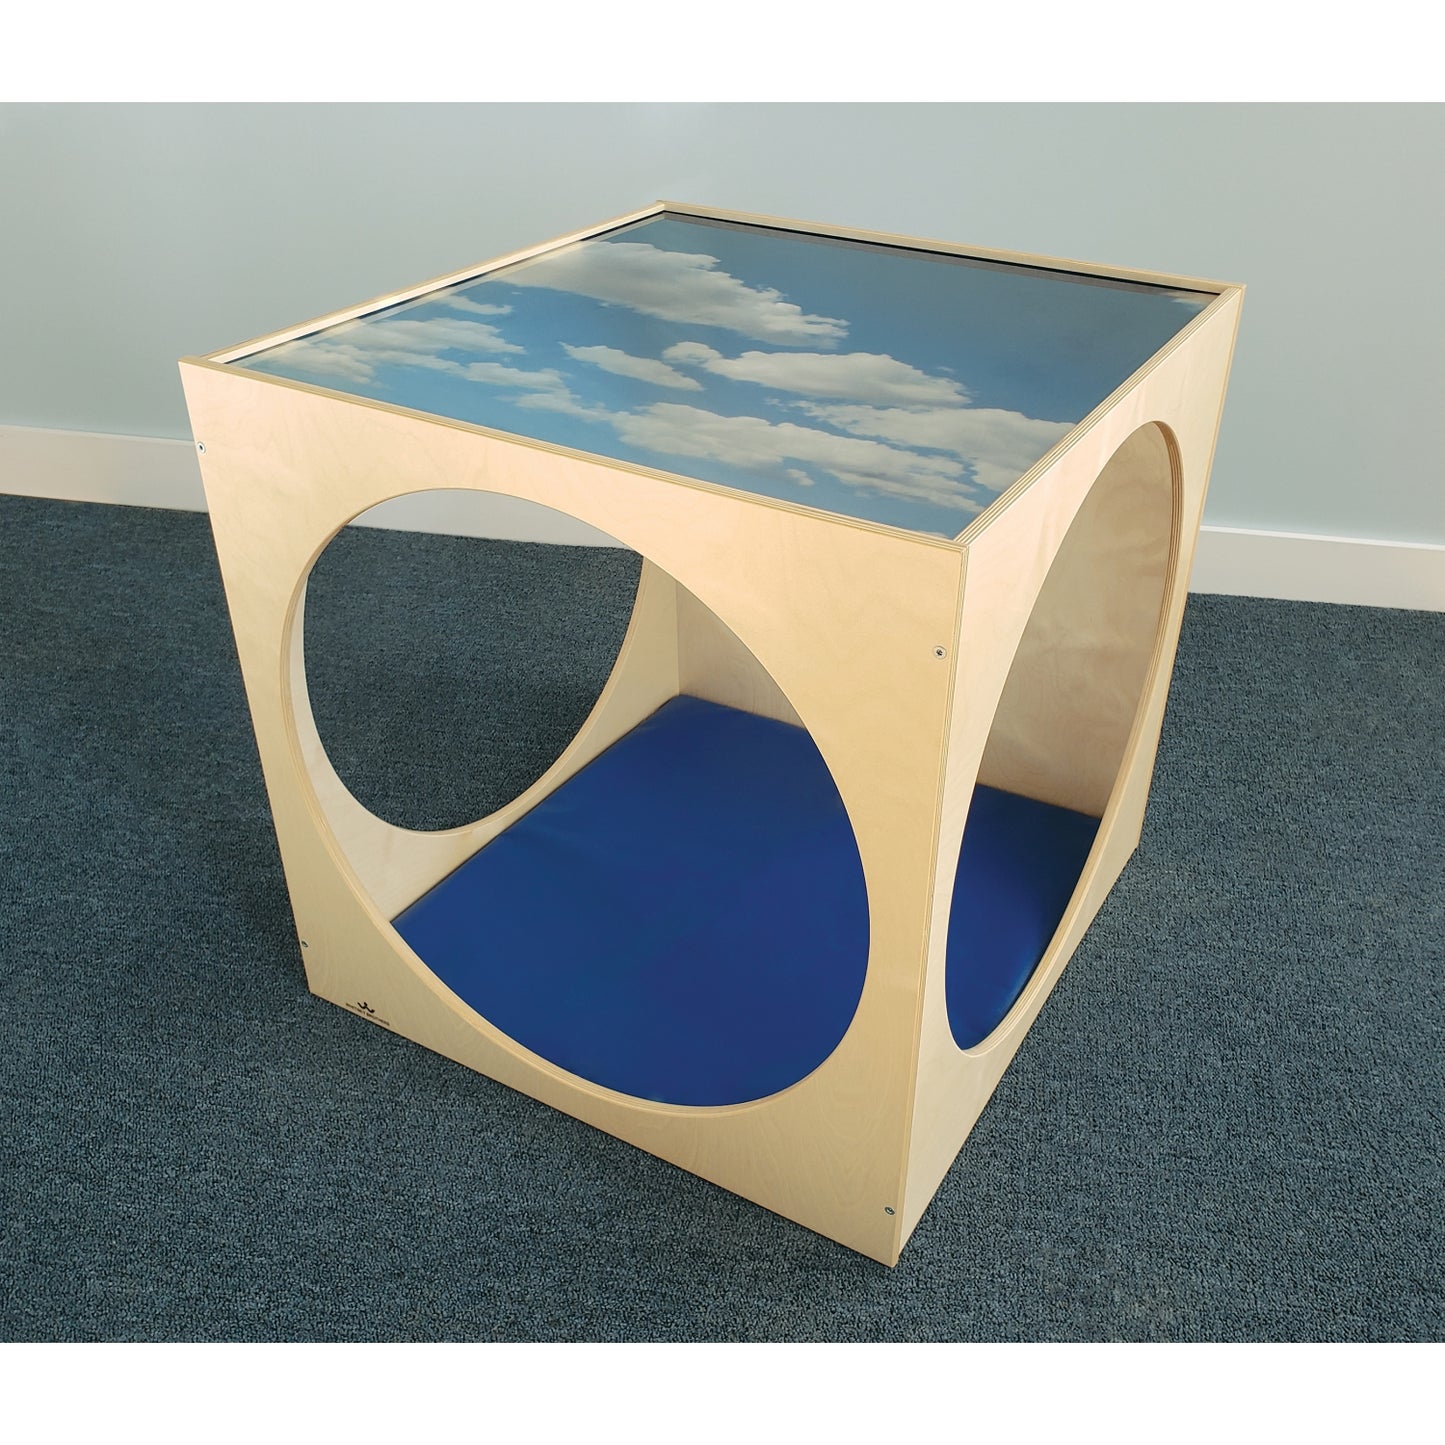 Acrylic Sky Top Playhouse Cube With Floor Mat